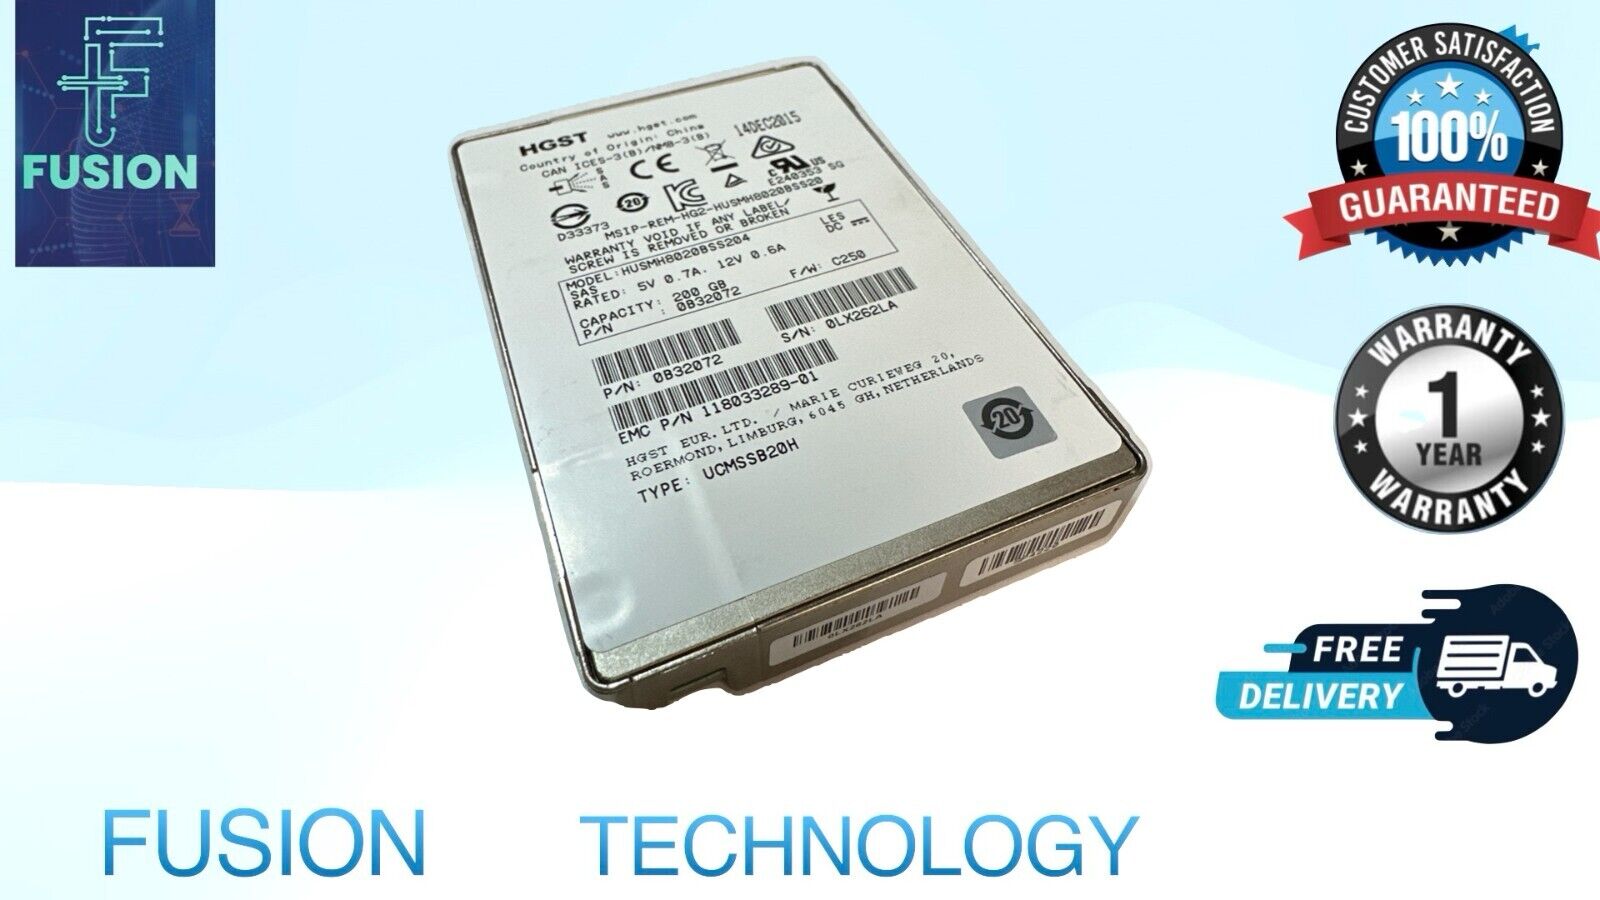 HGST HUSMH8020BSS204 200GB SSD SAS 12G 12Gbps 2.5